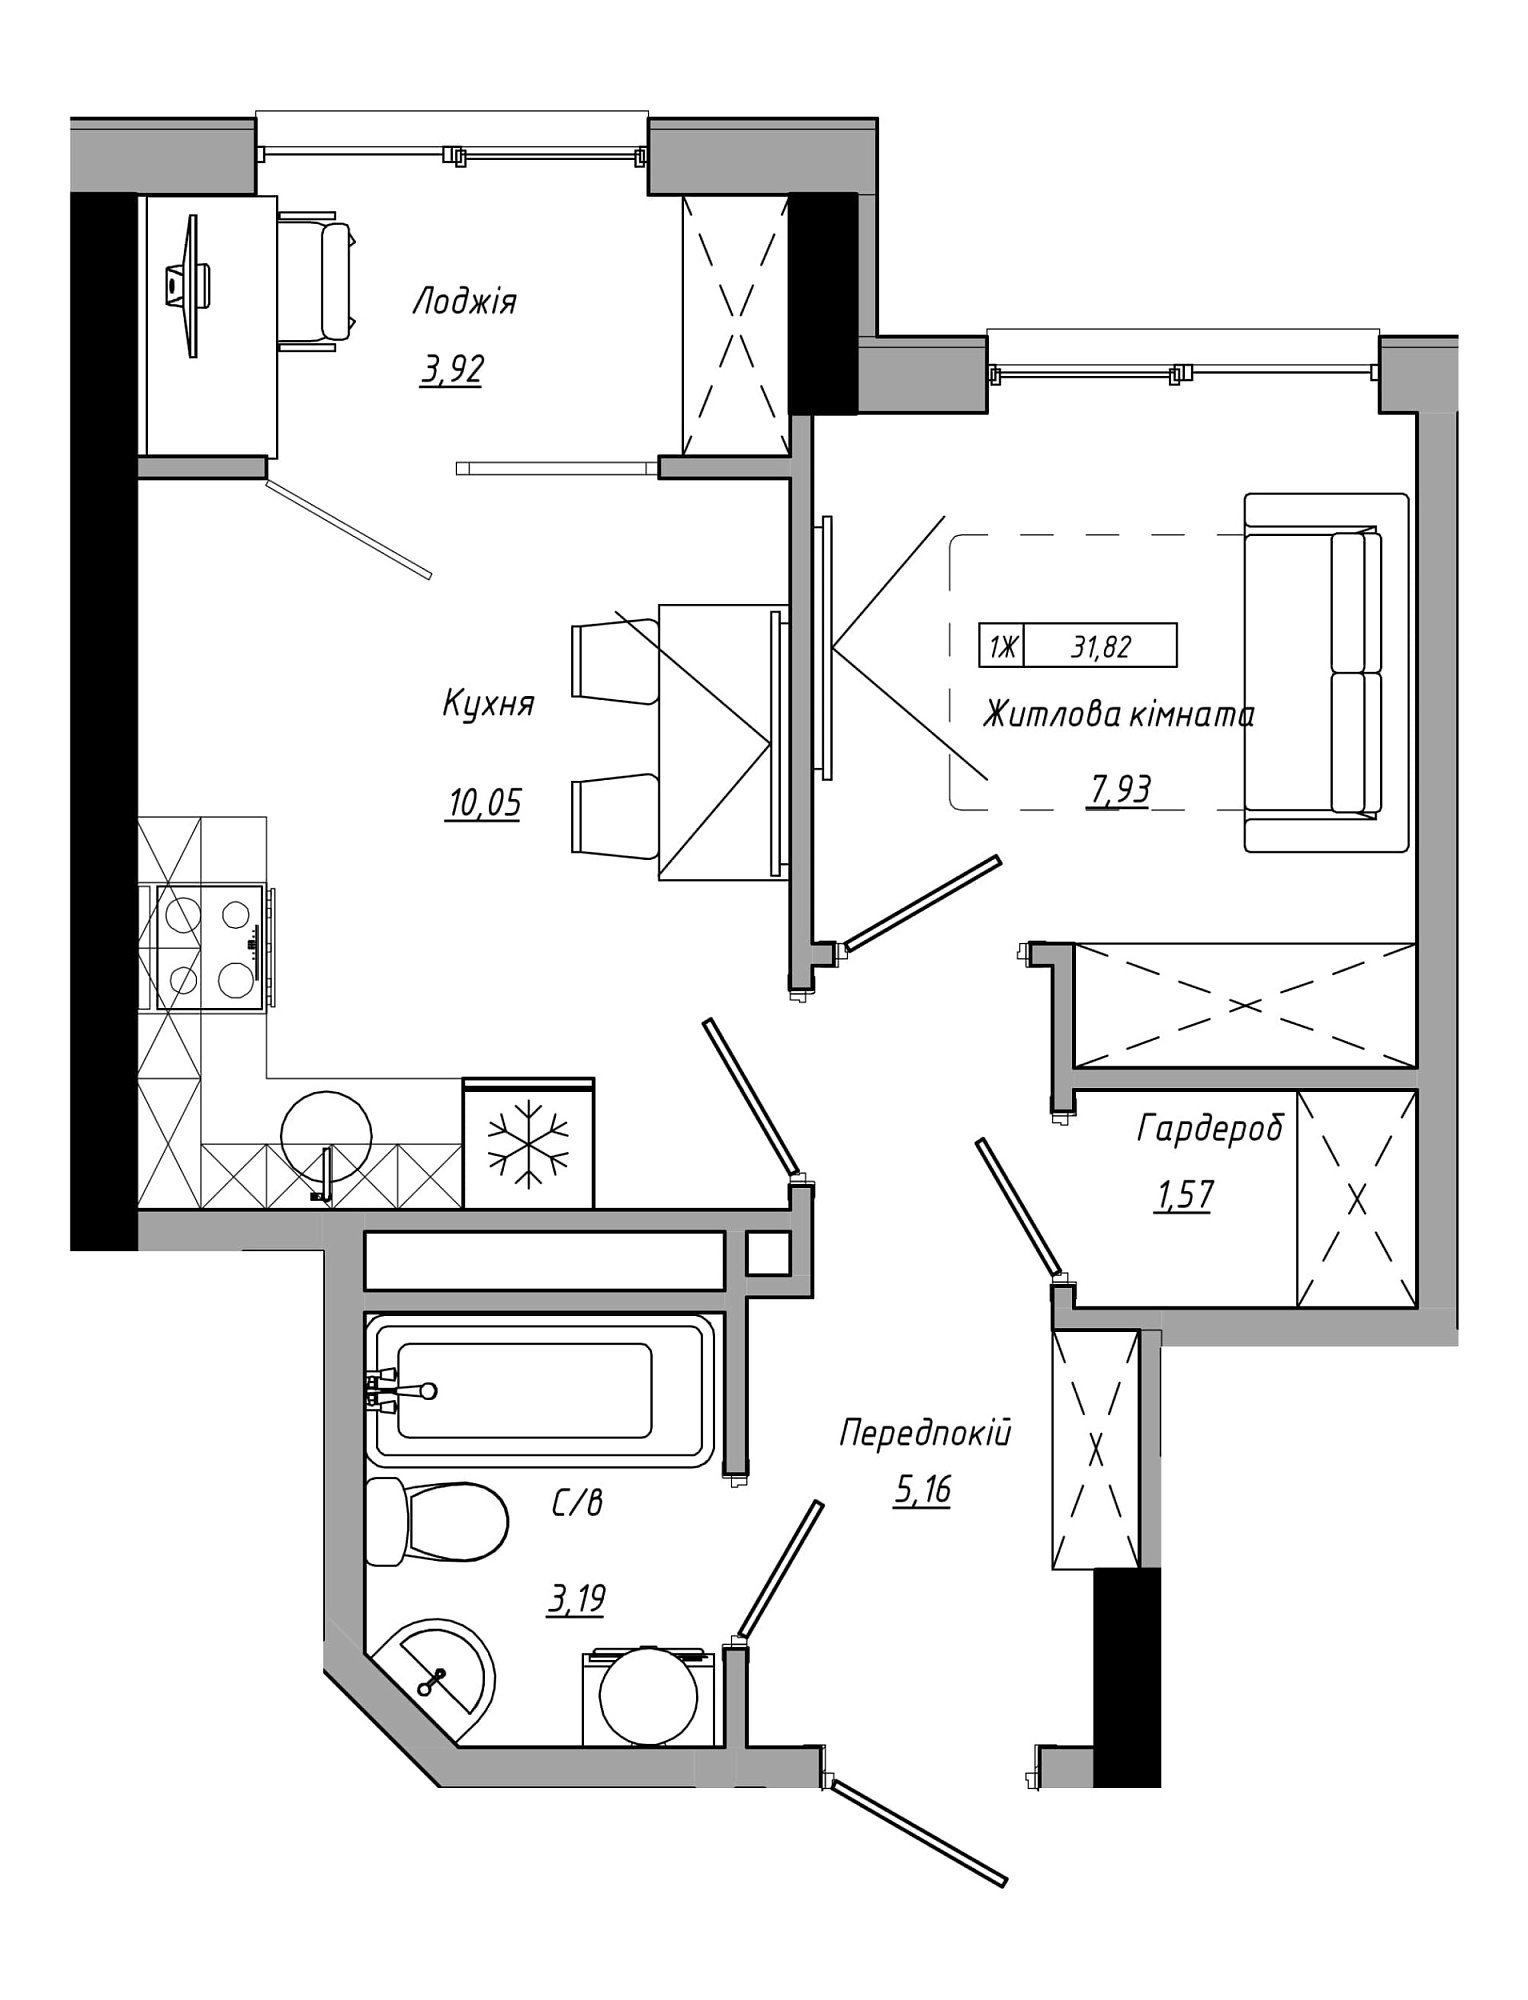 Планировка 1-к квартира площей 31.82м2, AB-21-13/00110.